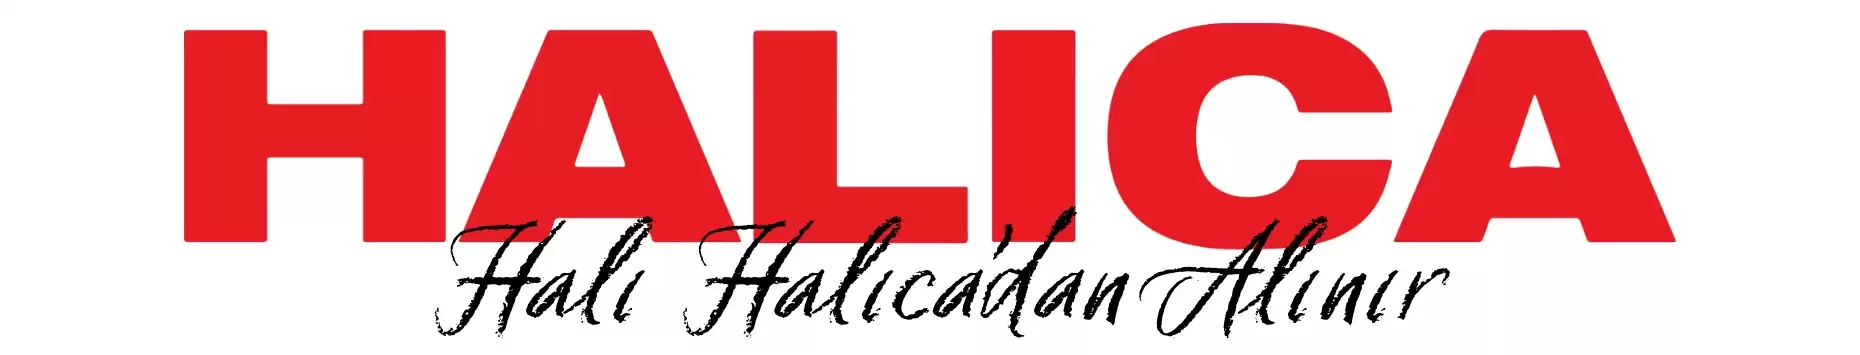 header desktop logo